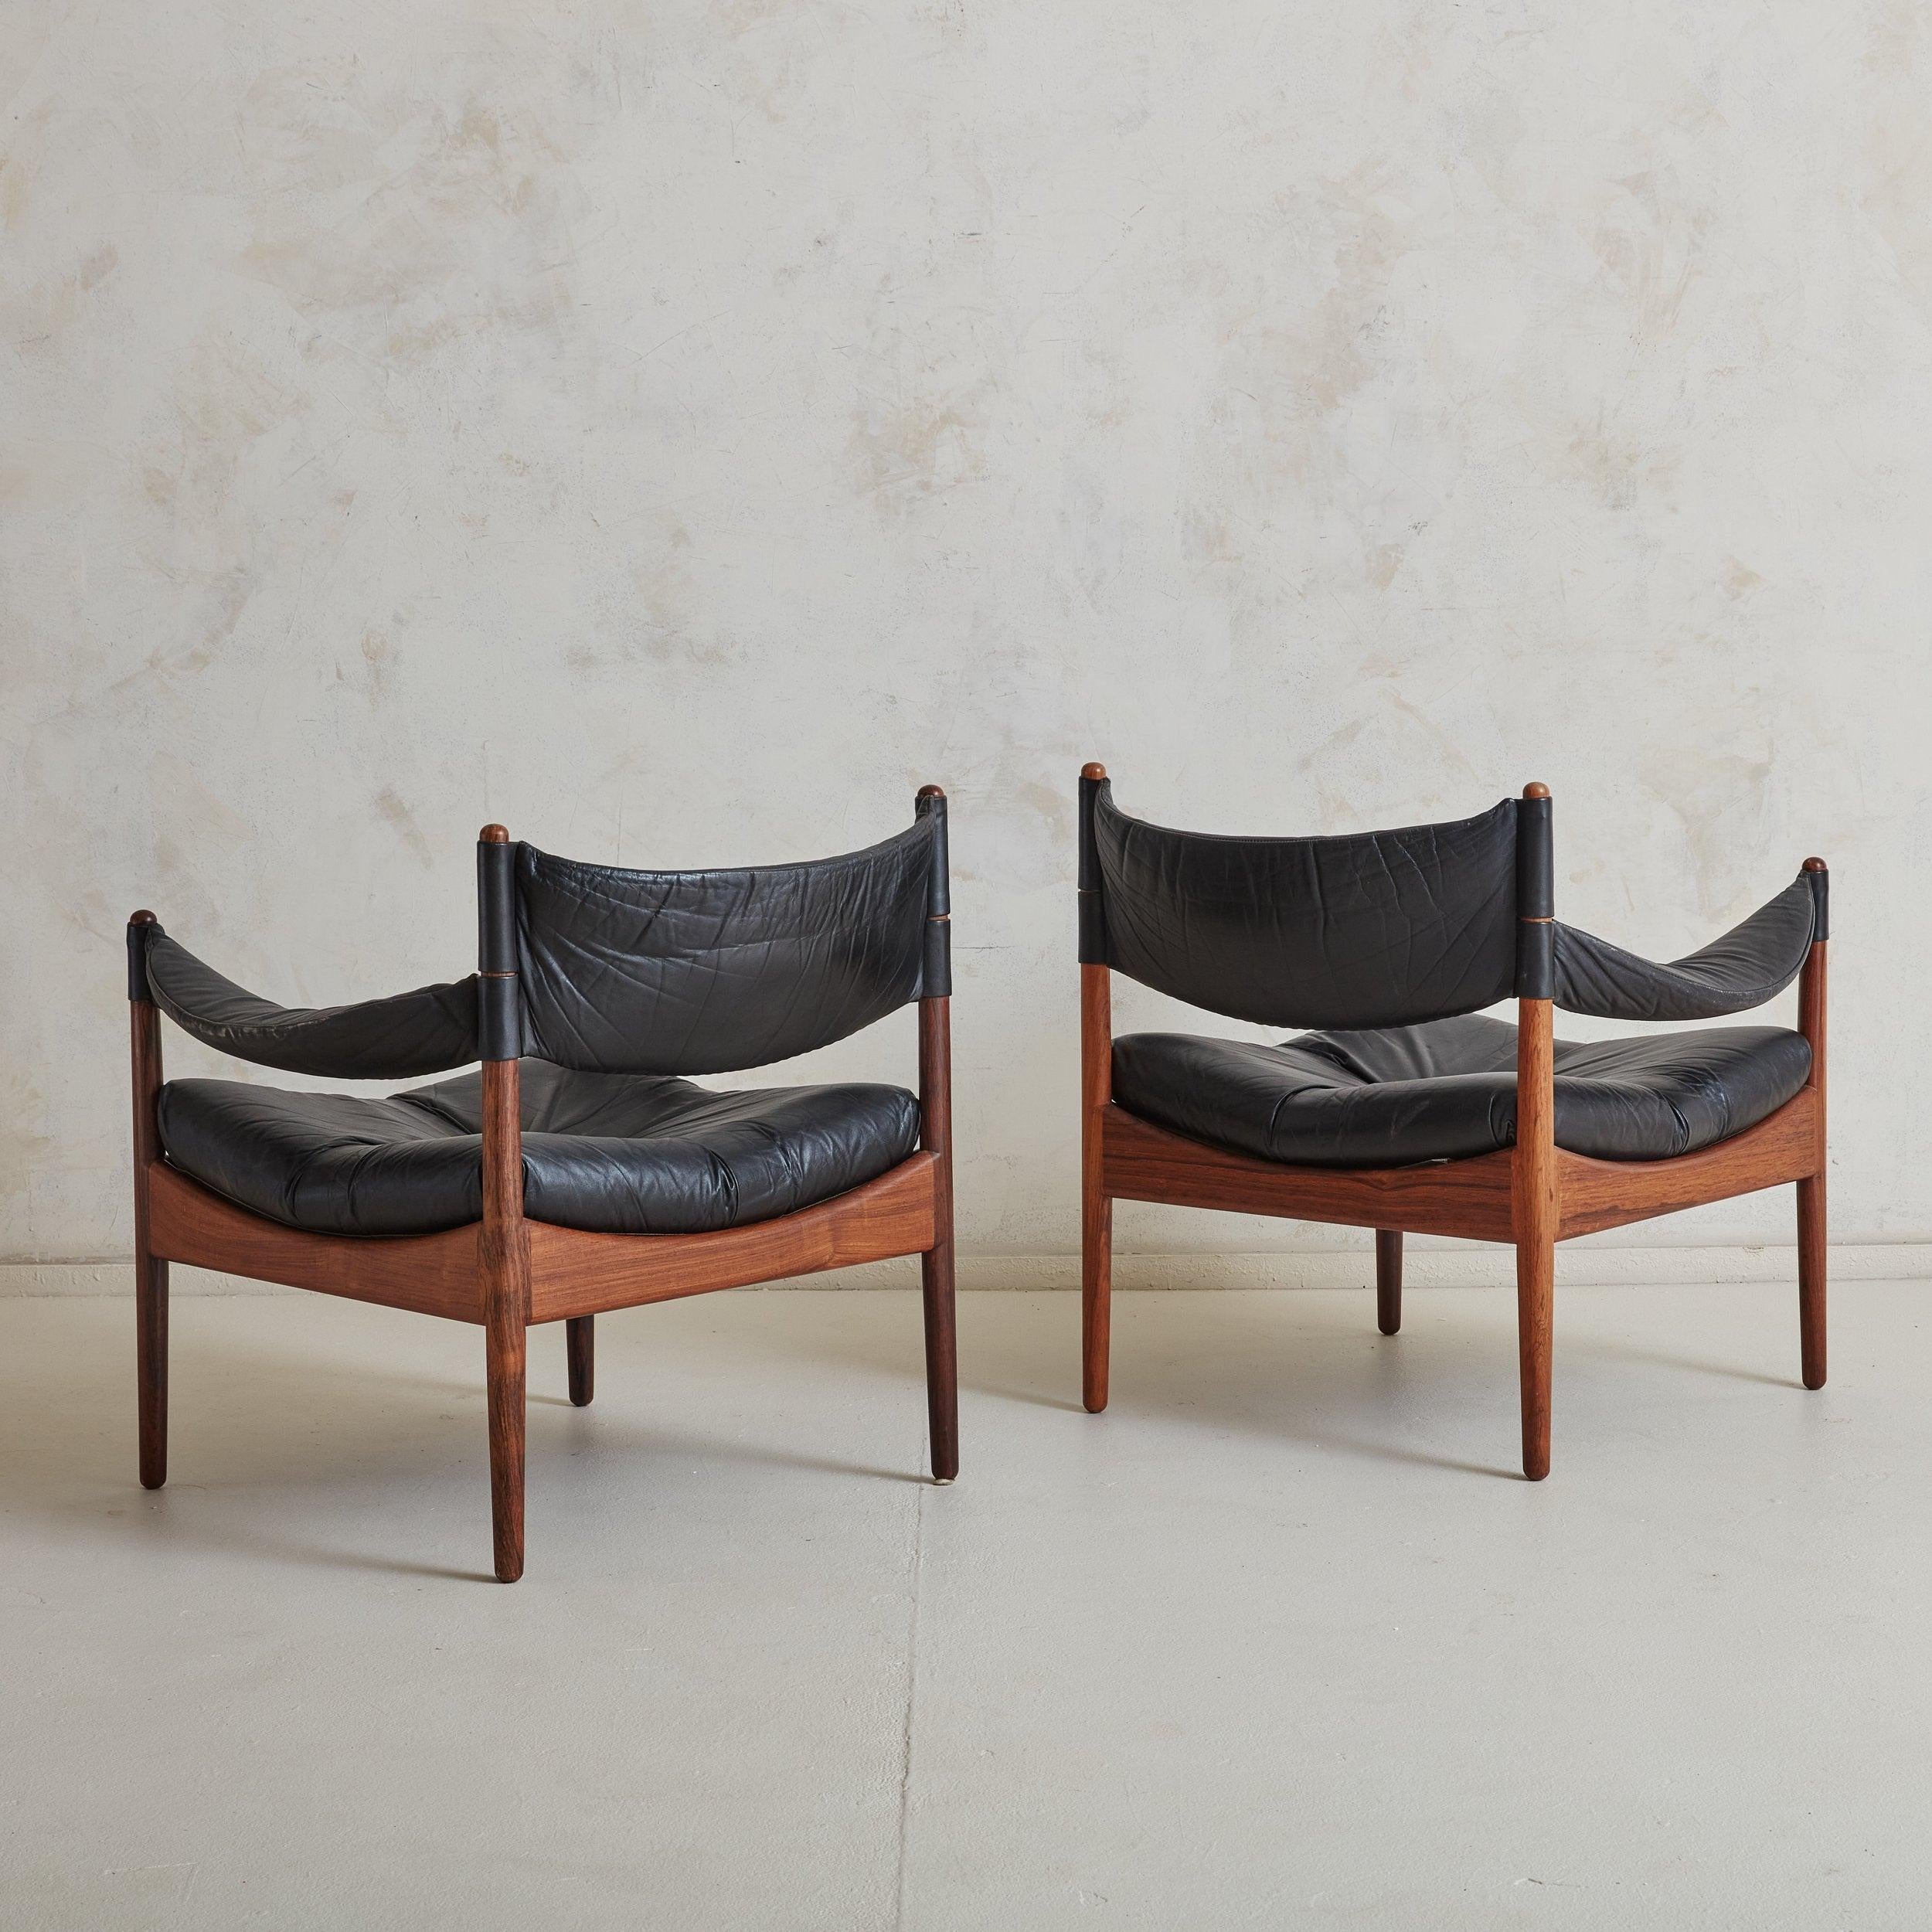 2 lederne stühle mit tisch by Kristian Vedel für Willadsen Møbelfabrik (Skandinavische Moderne) im Angebot